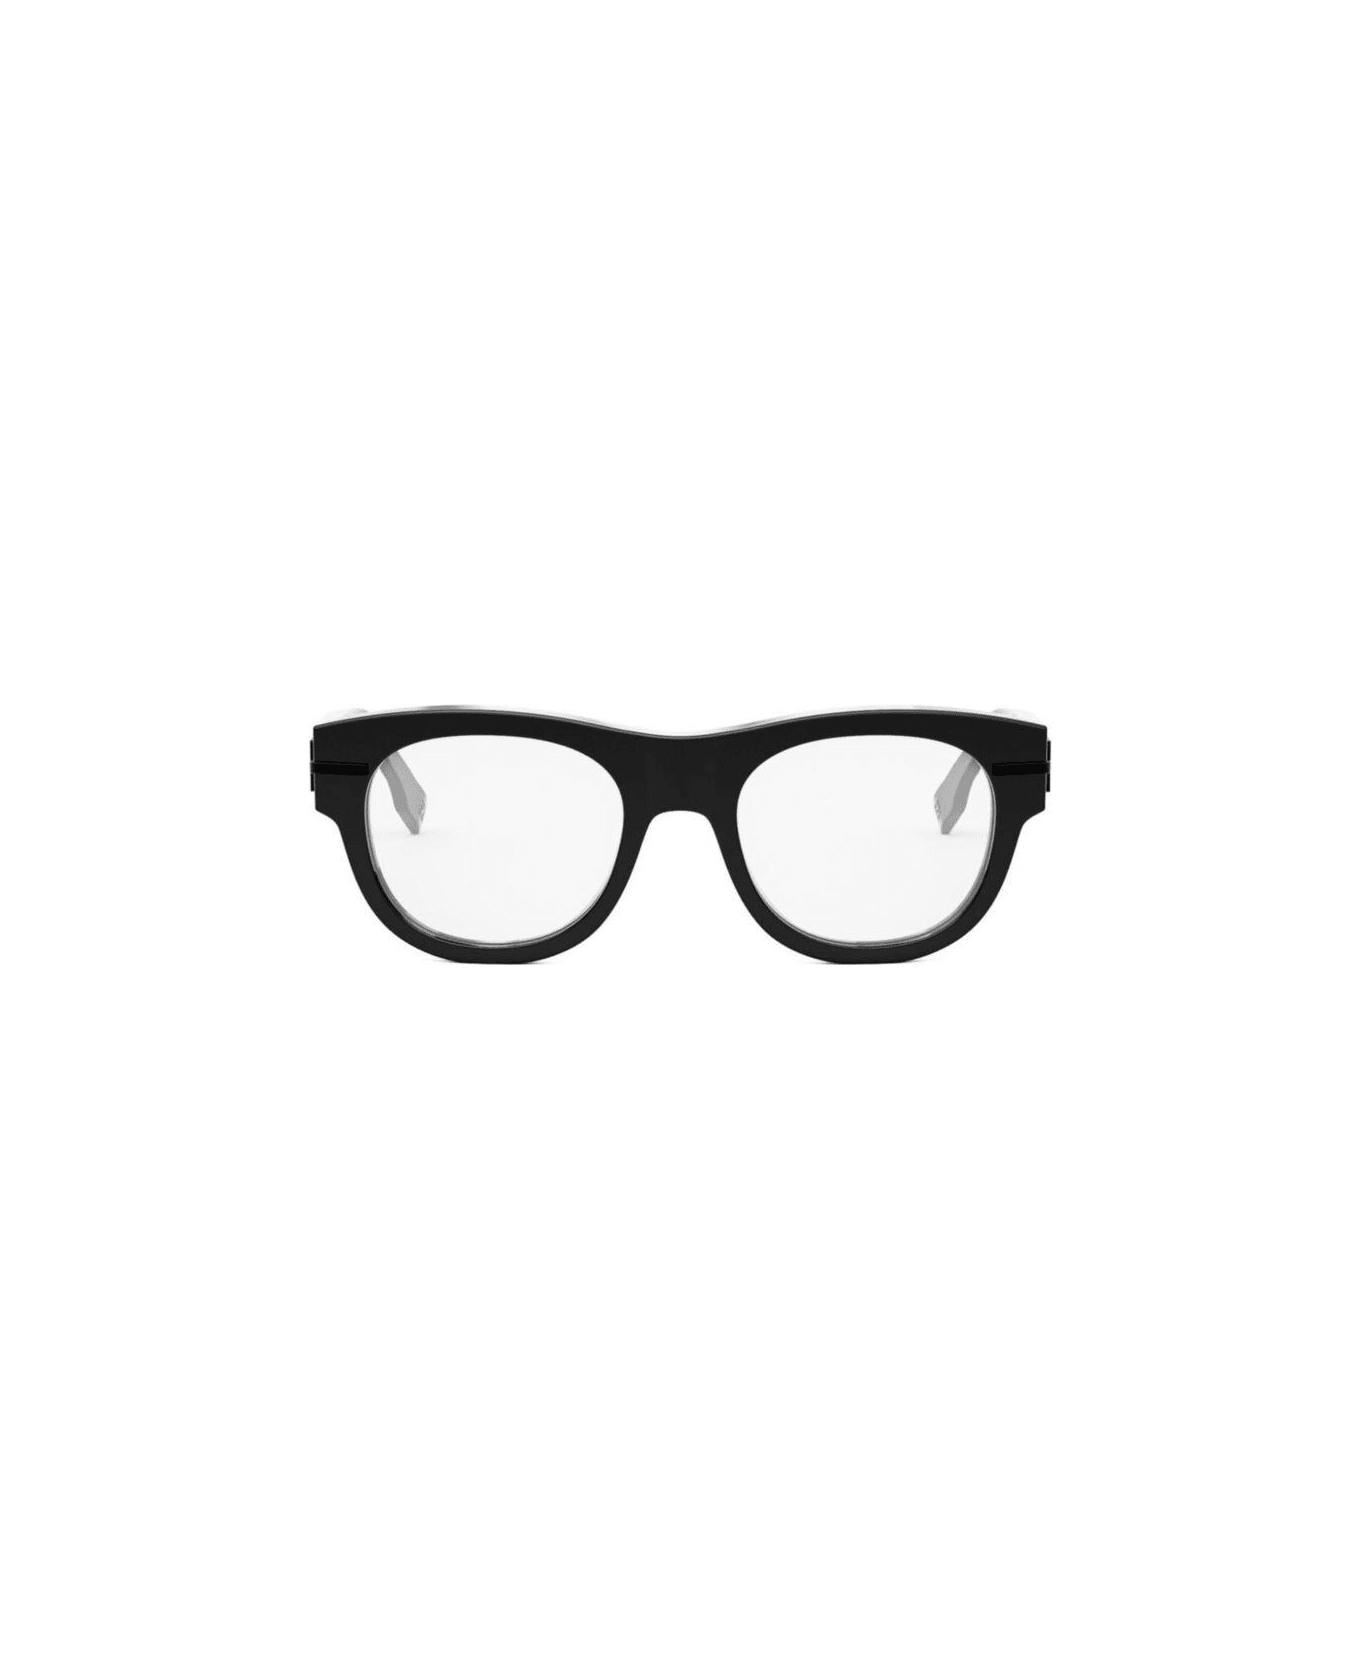 Fendi Eyewear Round-frame Glasses - 001 アイウェア